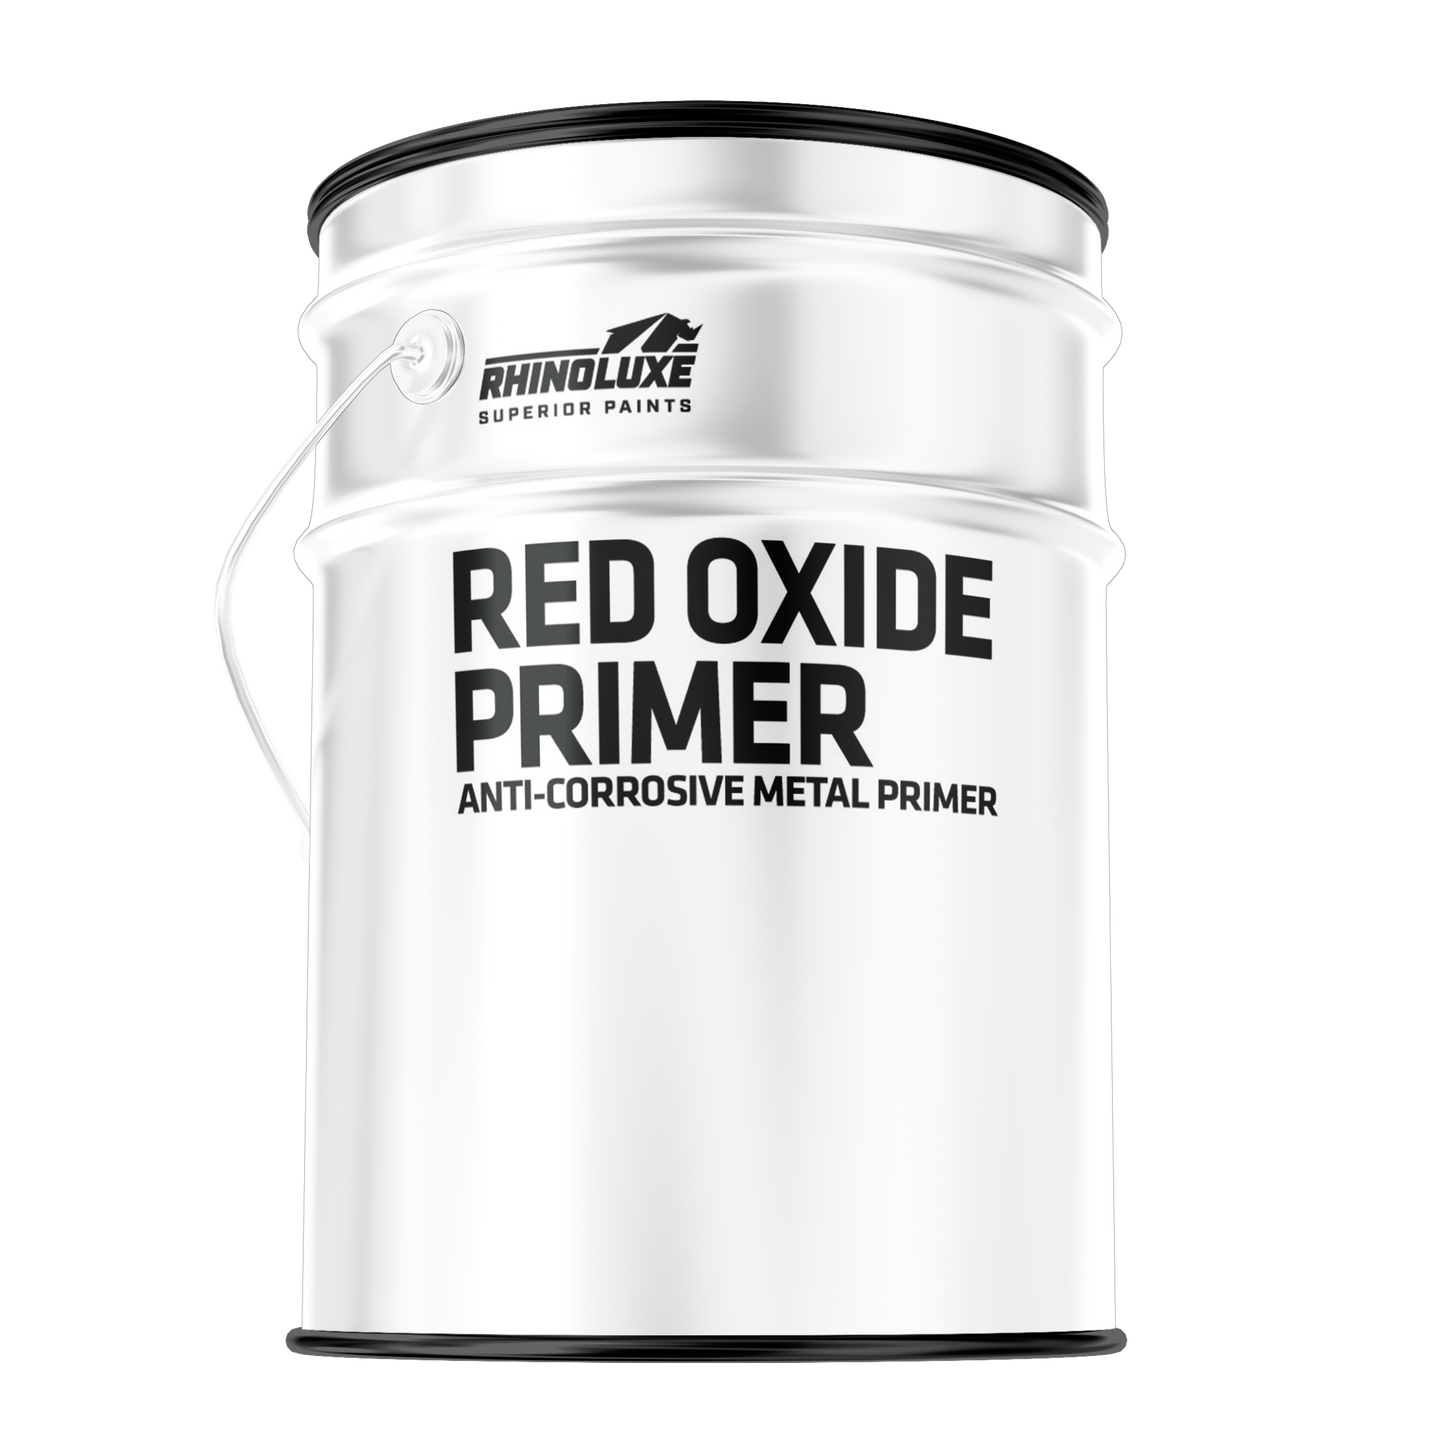 Red Oxide Primer Anti-Corrosive Metal Primer